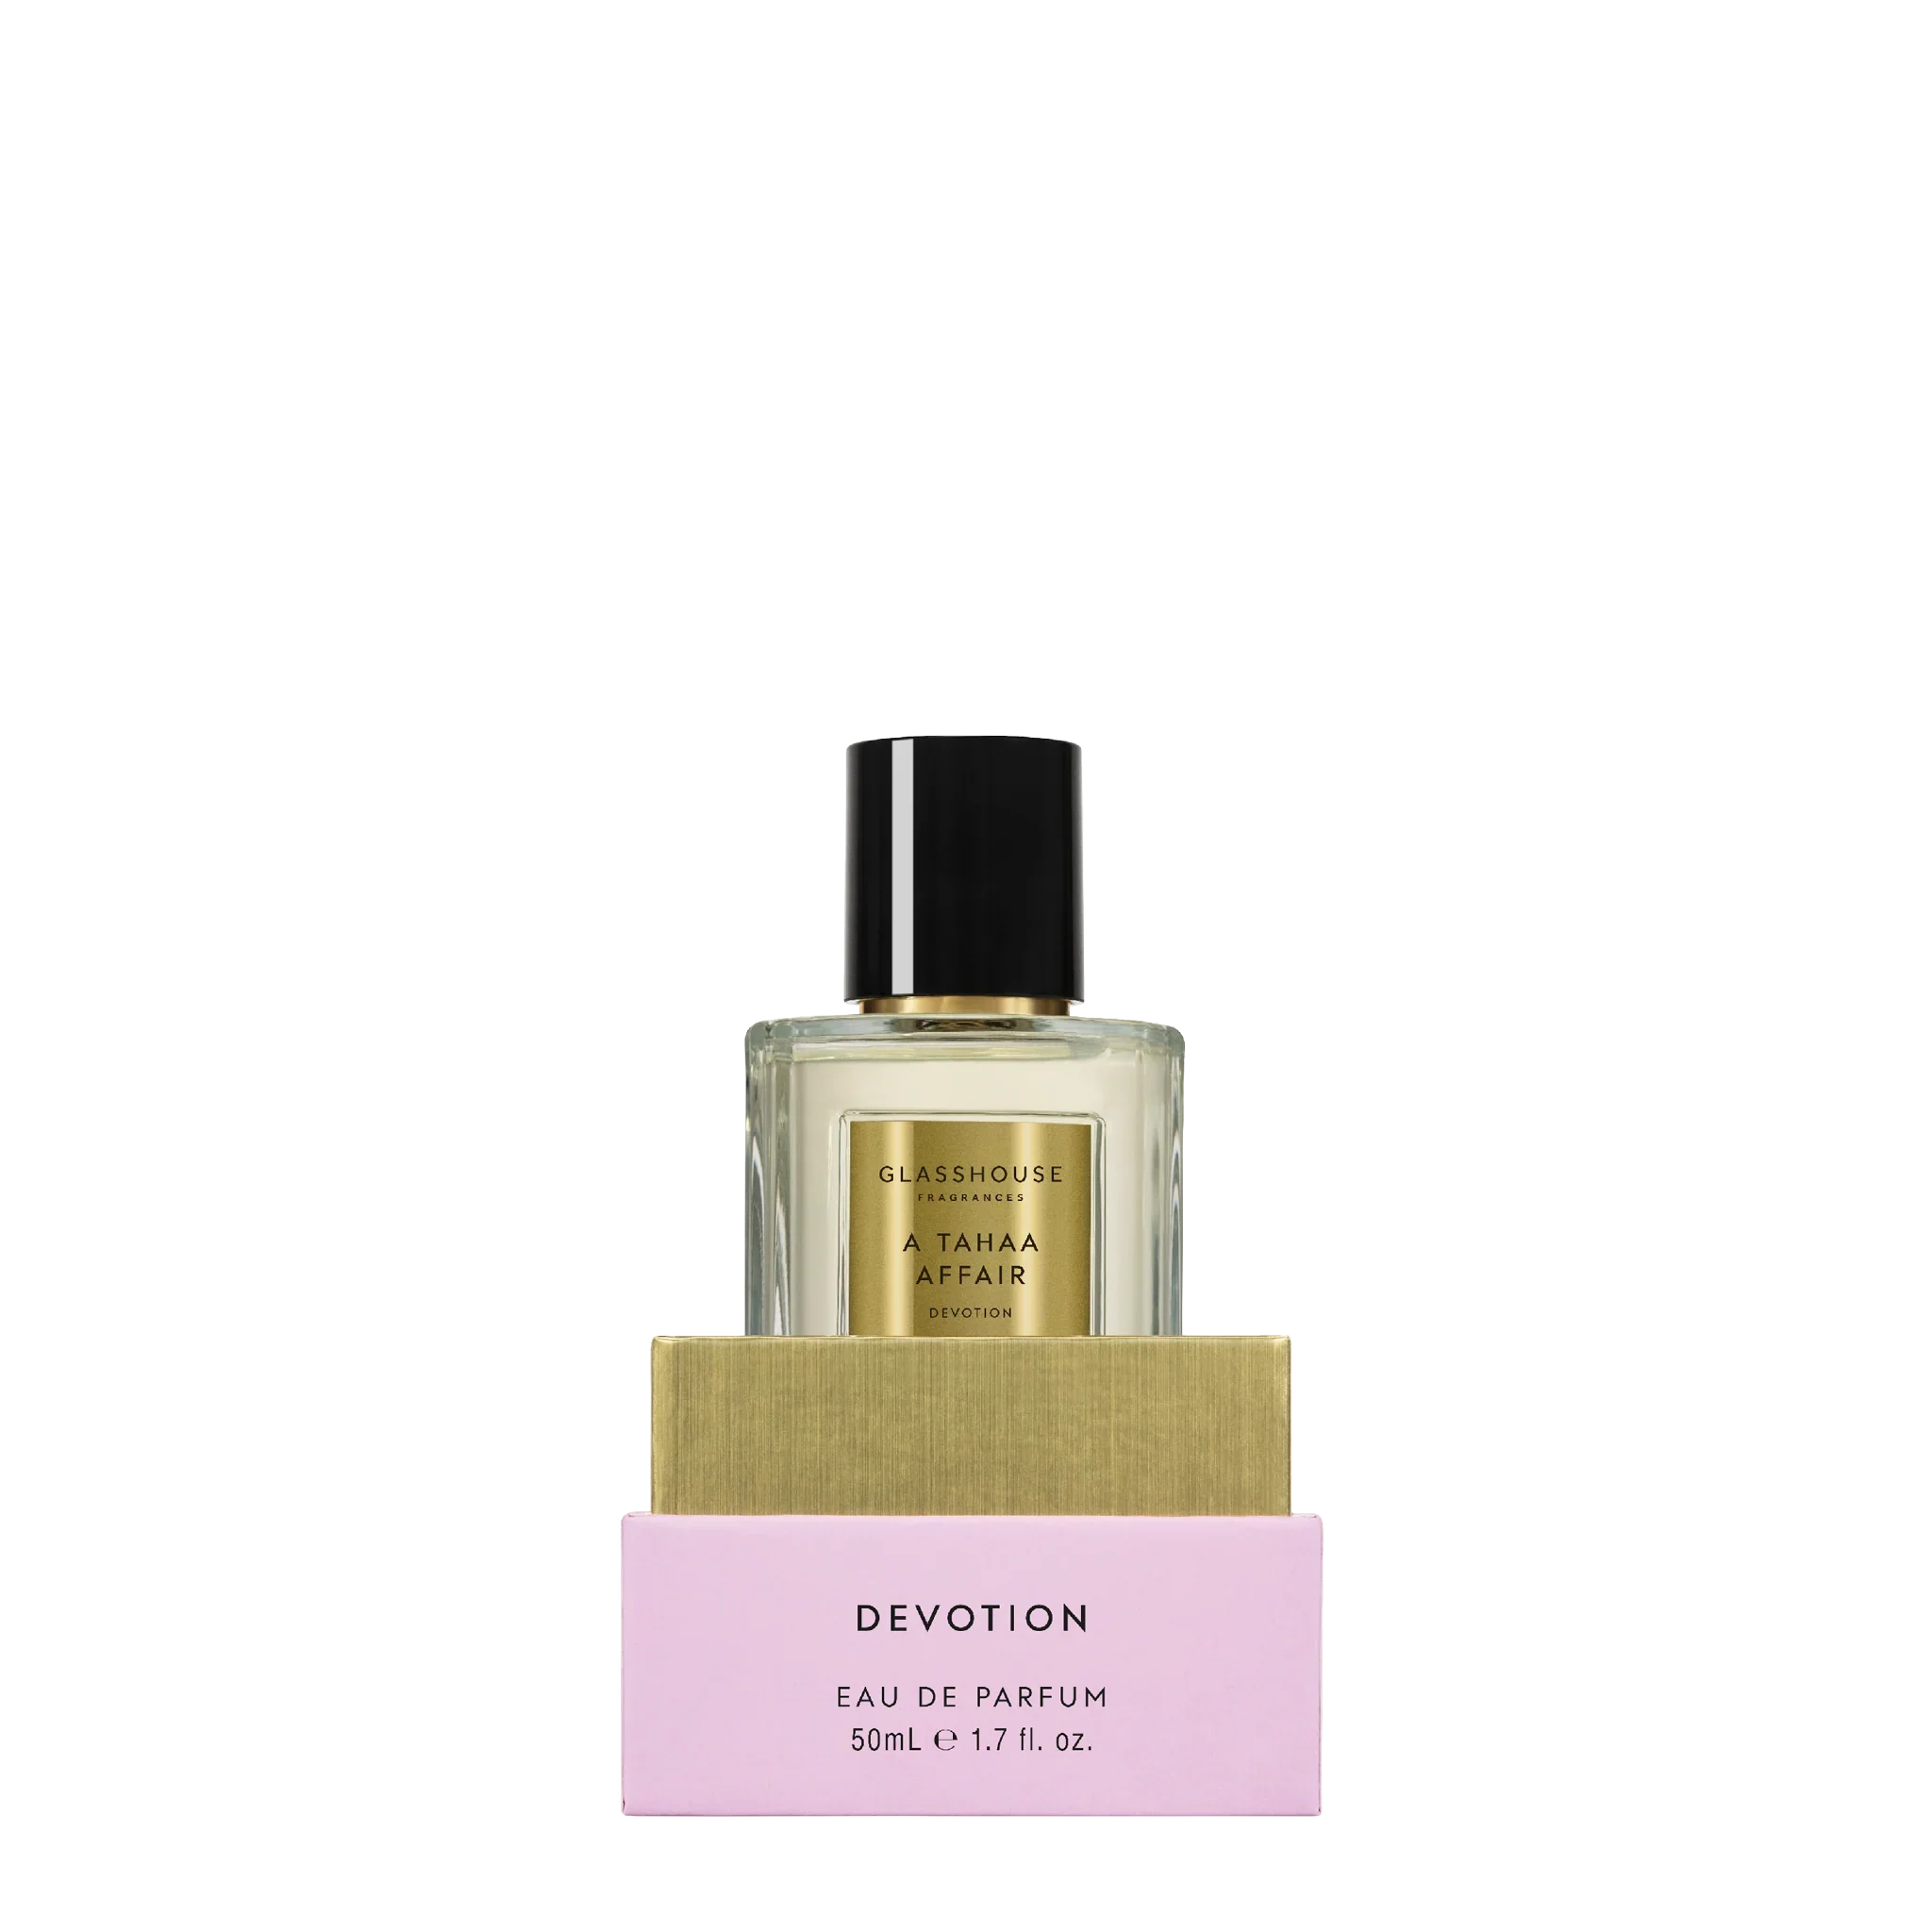 A Tahaa Affair Devotion - Butterscotch Caramel & Jasmine 50mL Eau de Parfum